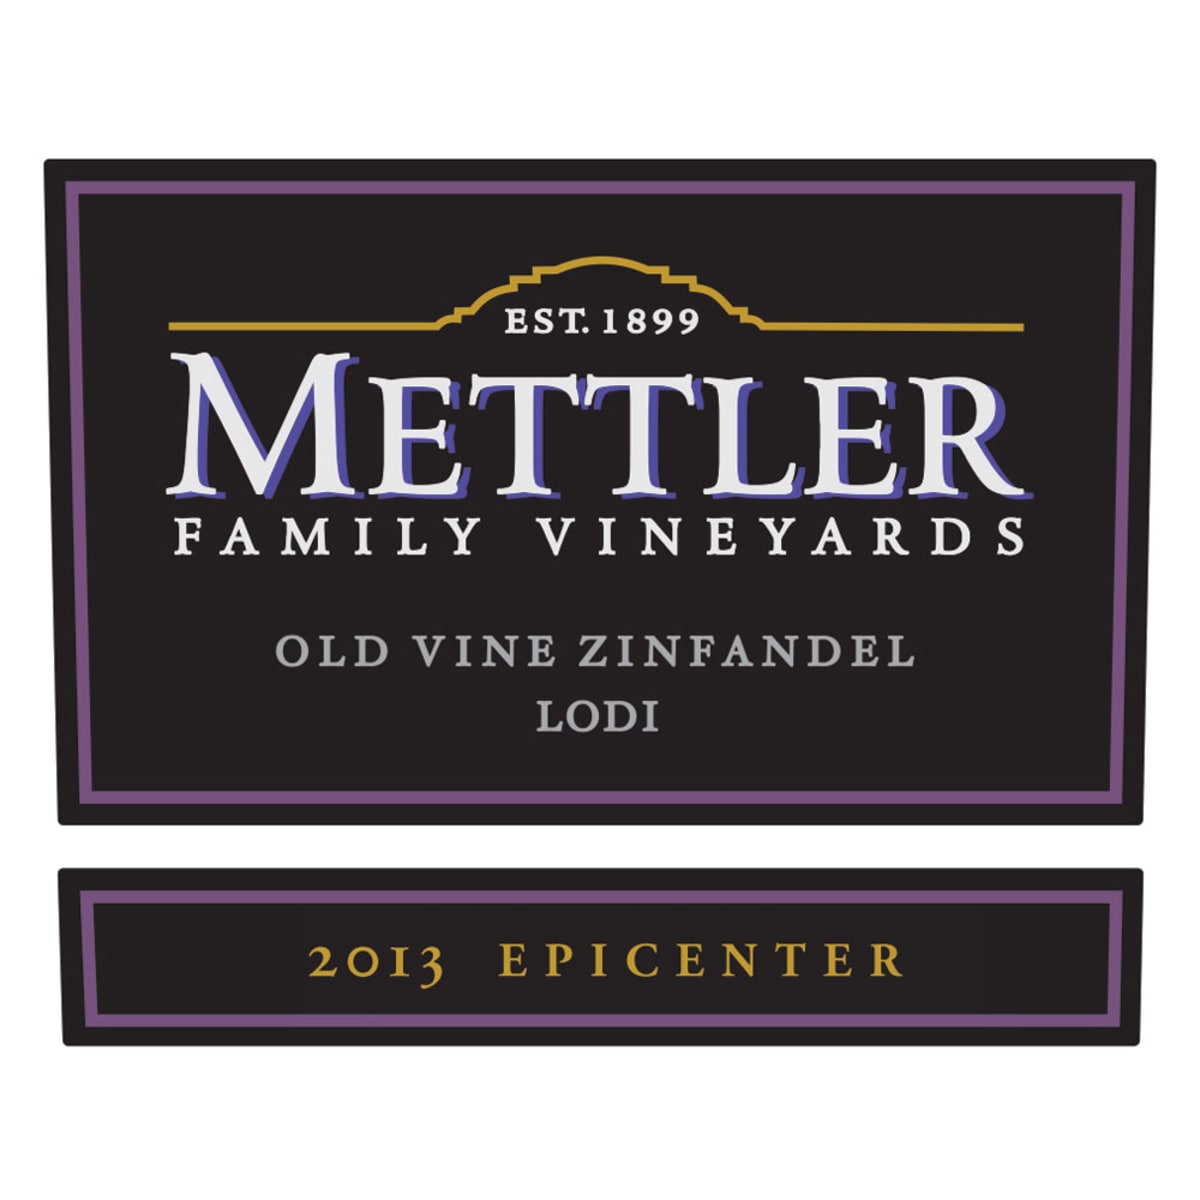 Mettler Family Vineyards Epicenter Old Vine Zinfandel 2013 Front Label